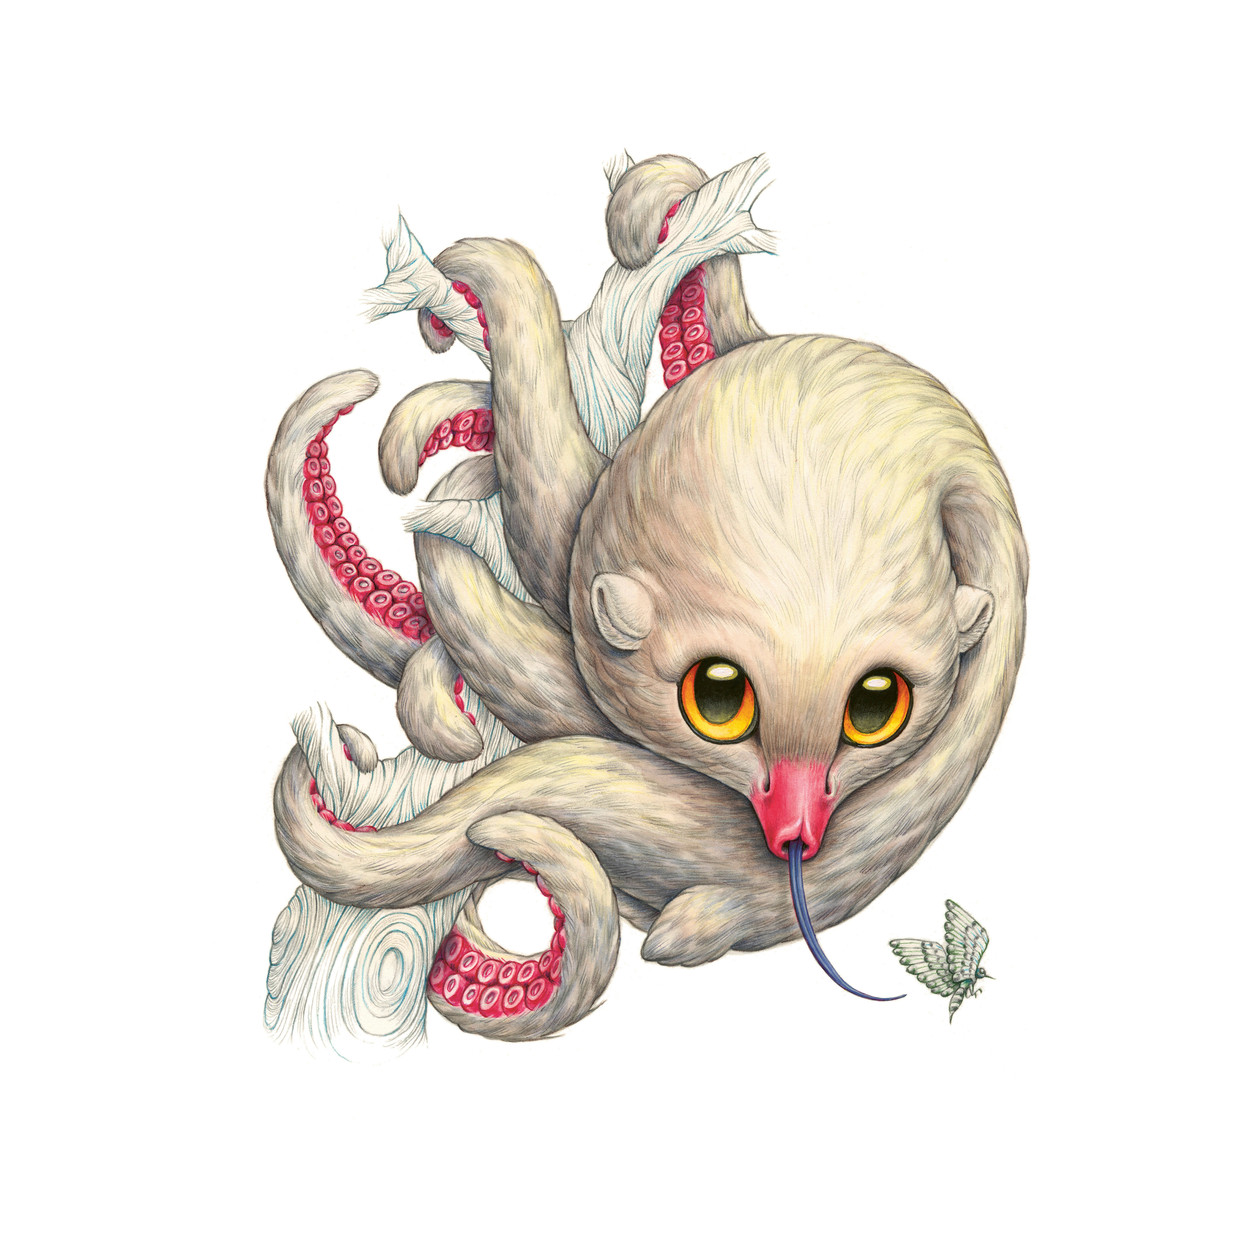 De blonde octopossum houdt zich op op het droge land van Terra Ultima. Beeld Raoul Deleo 